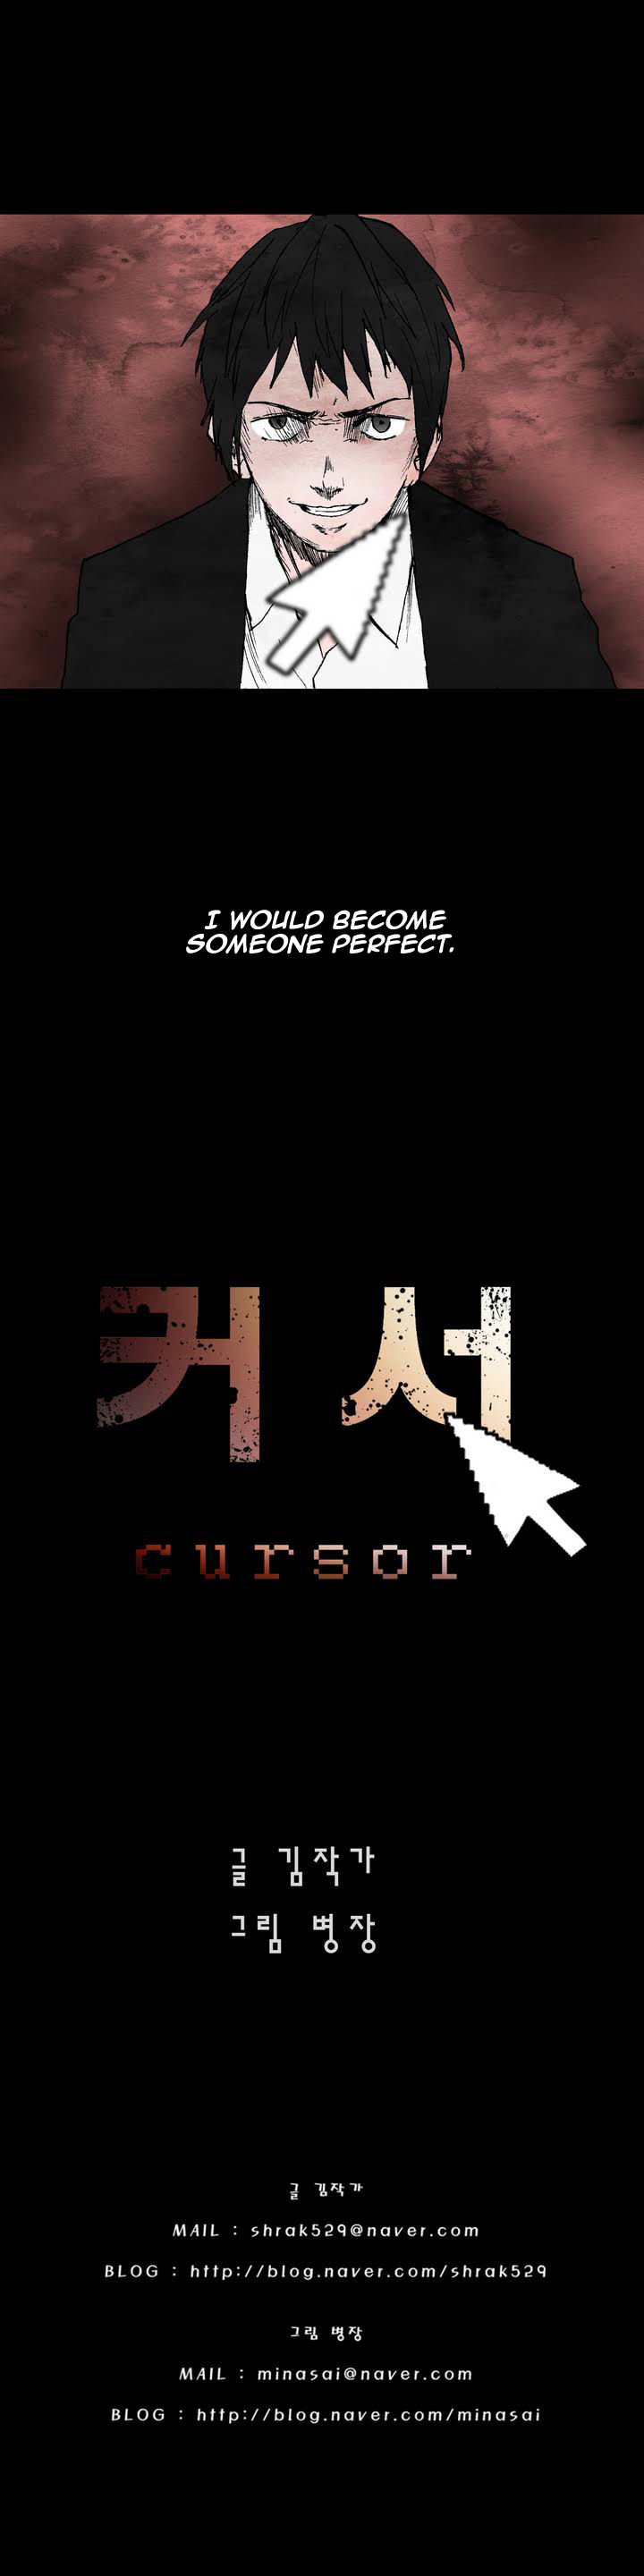 Cursor 0